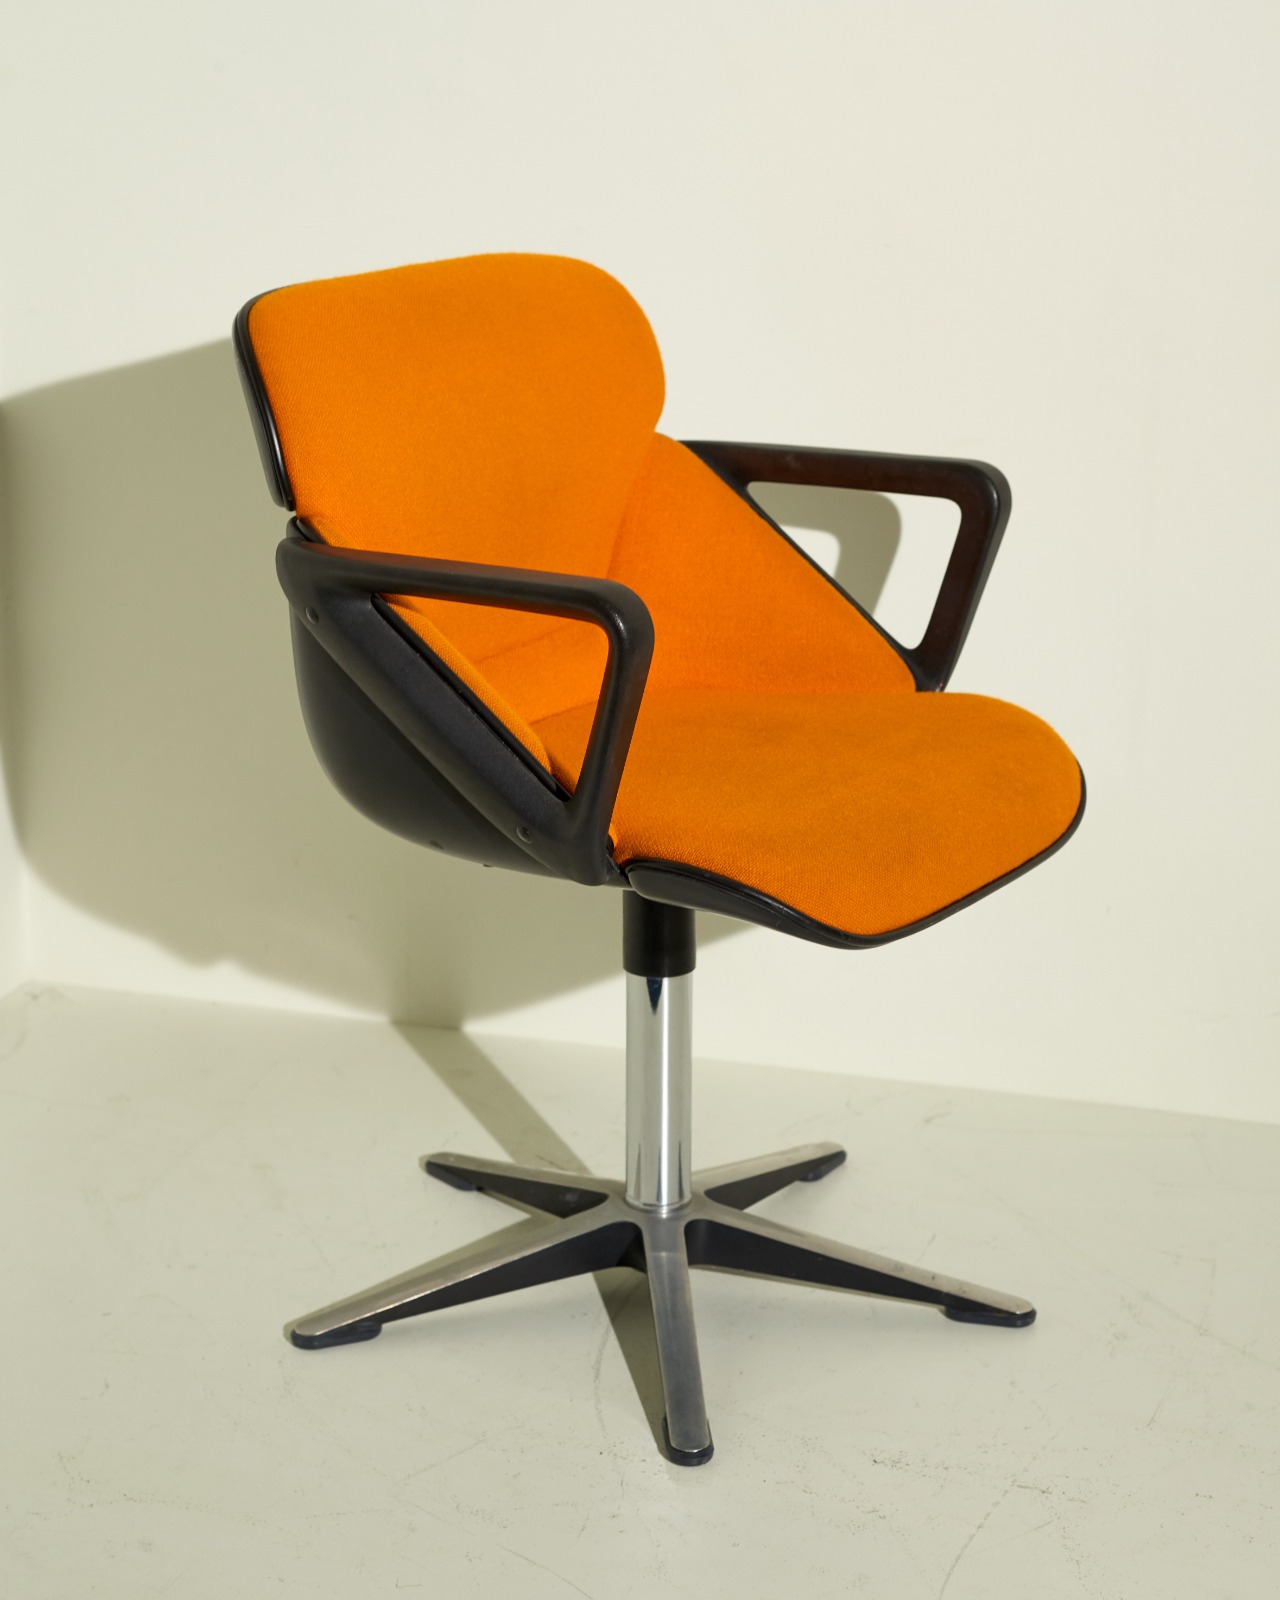 #10569 / Wilkhahn Lounge Chair By Wilhelm Ritz 70s (orange)